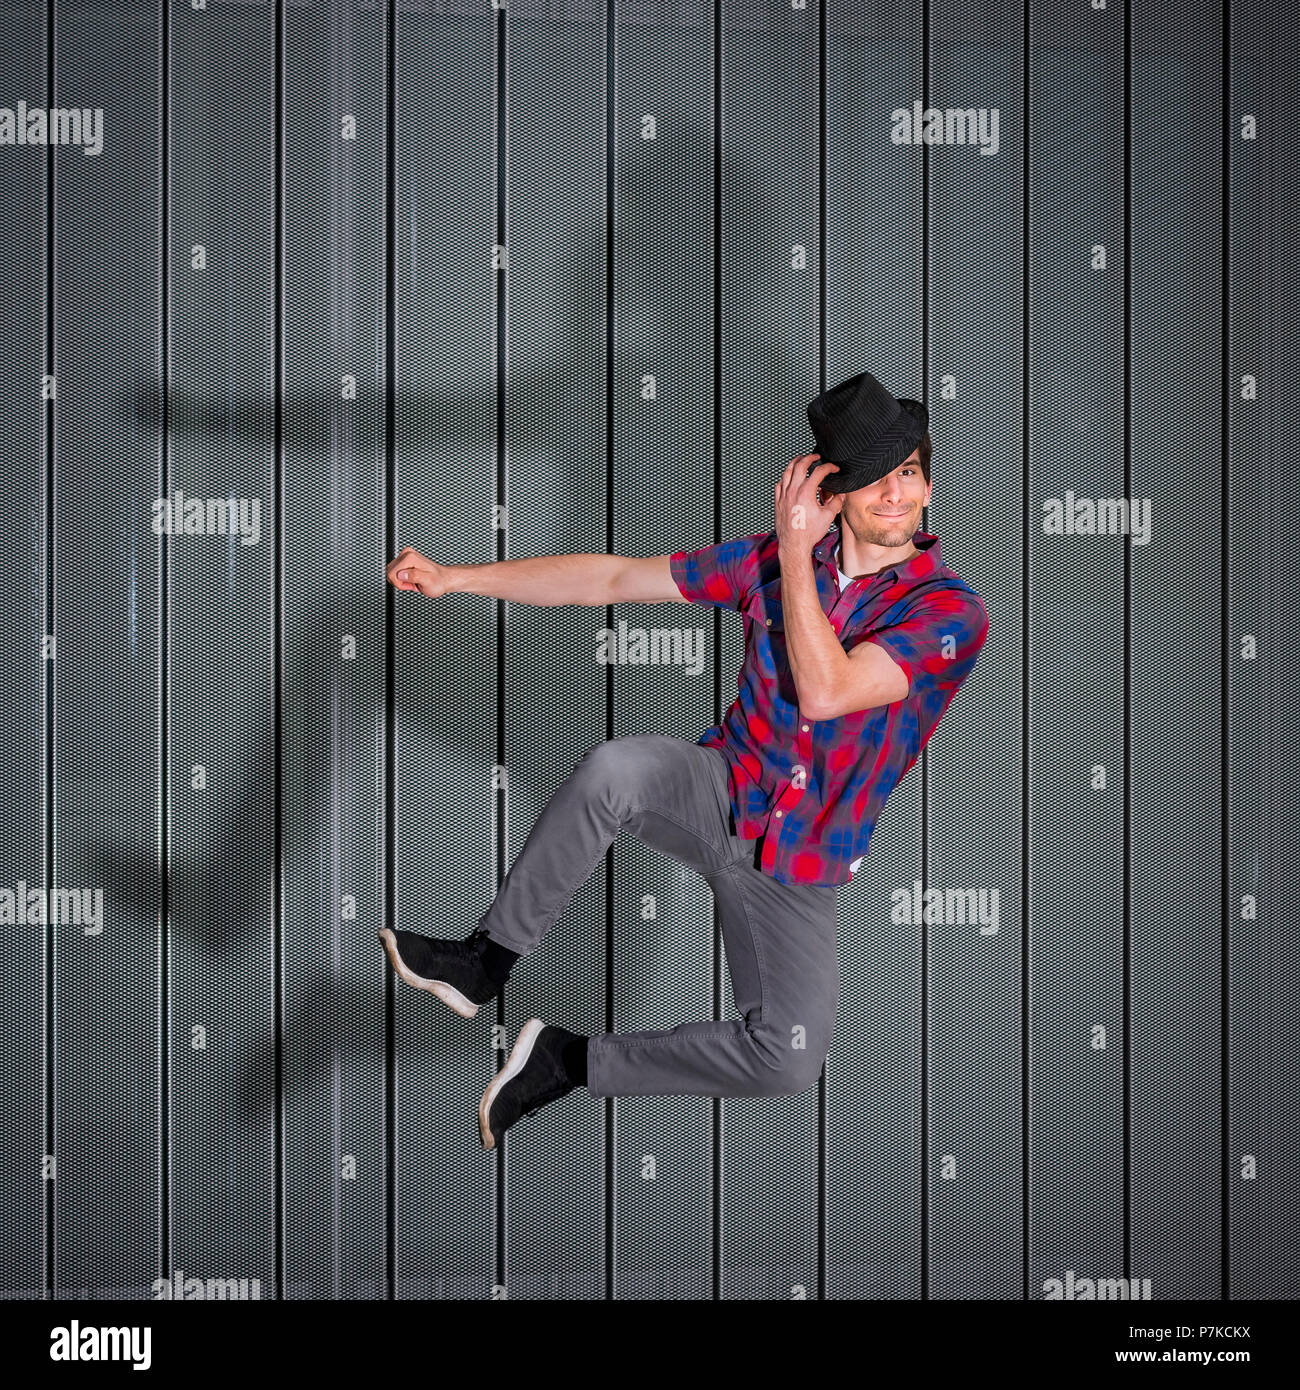 Jumping man con silueta, estilo de vida, de 24 años de edad, entorno urbano Foto de stock